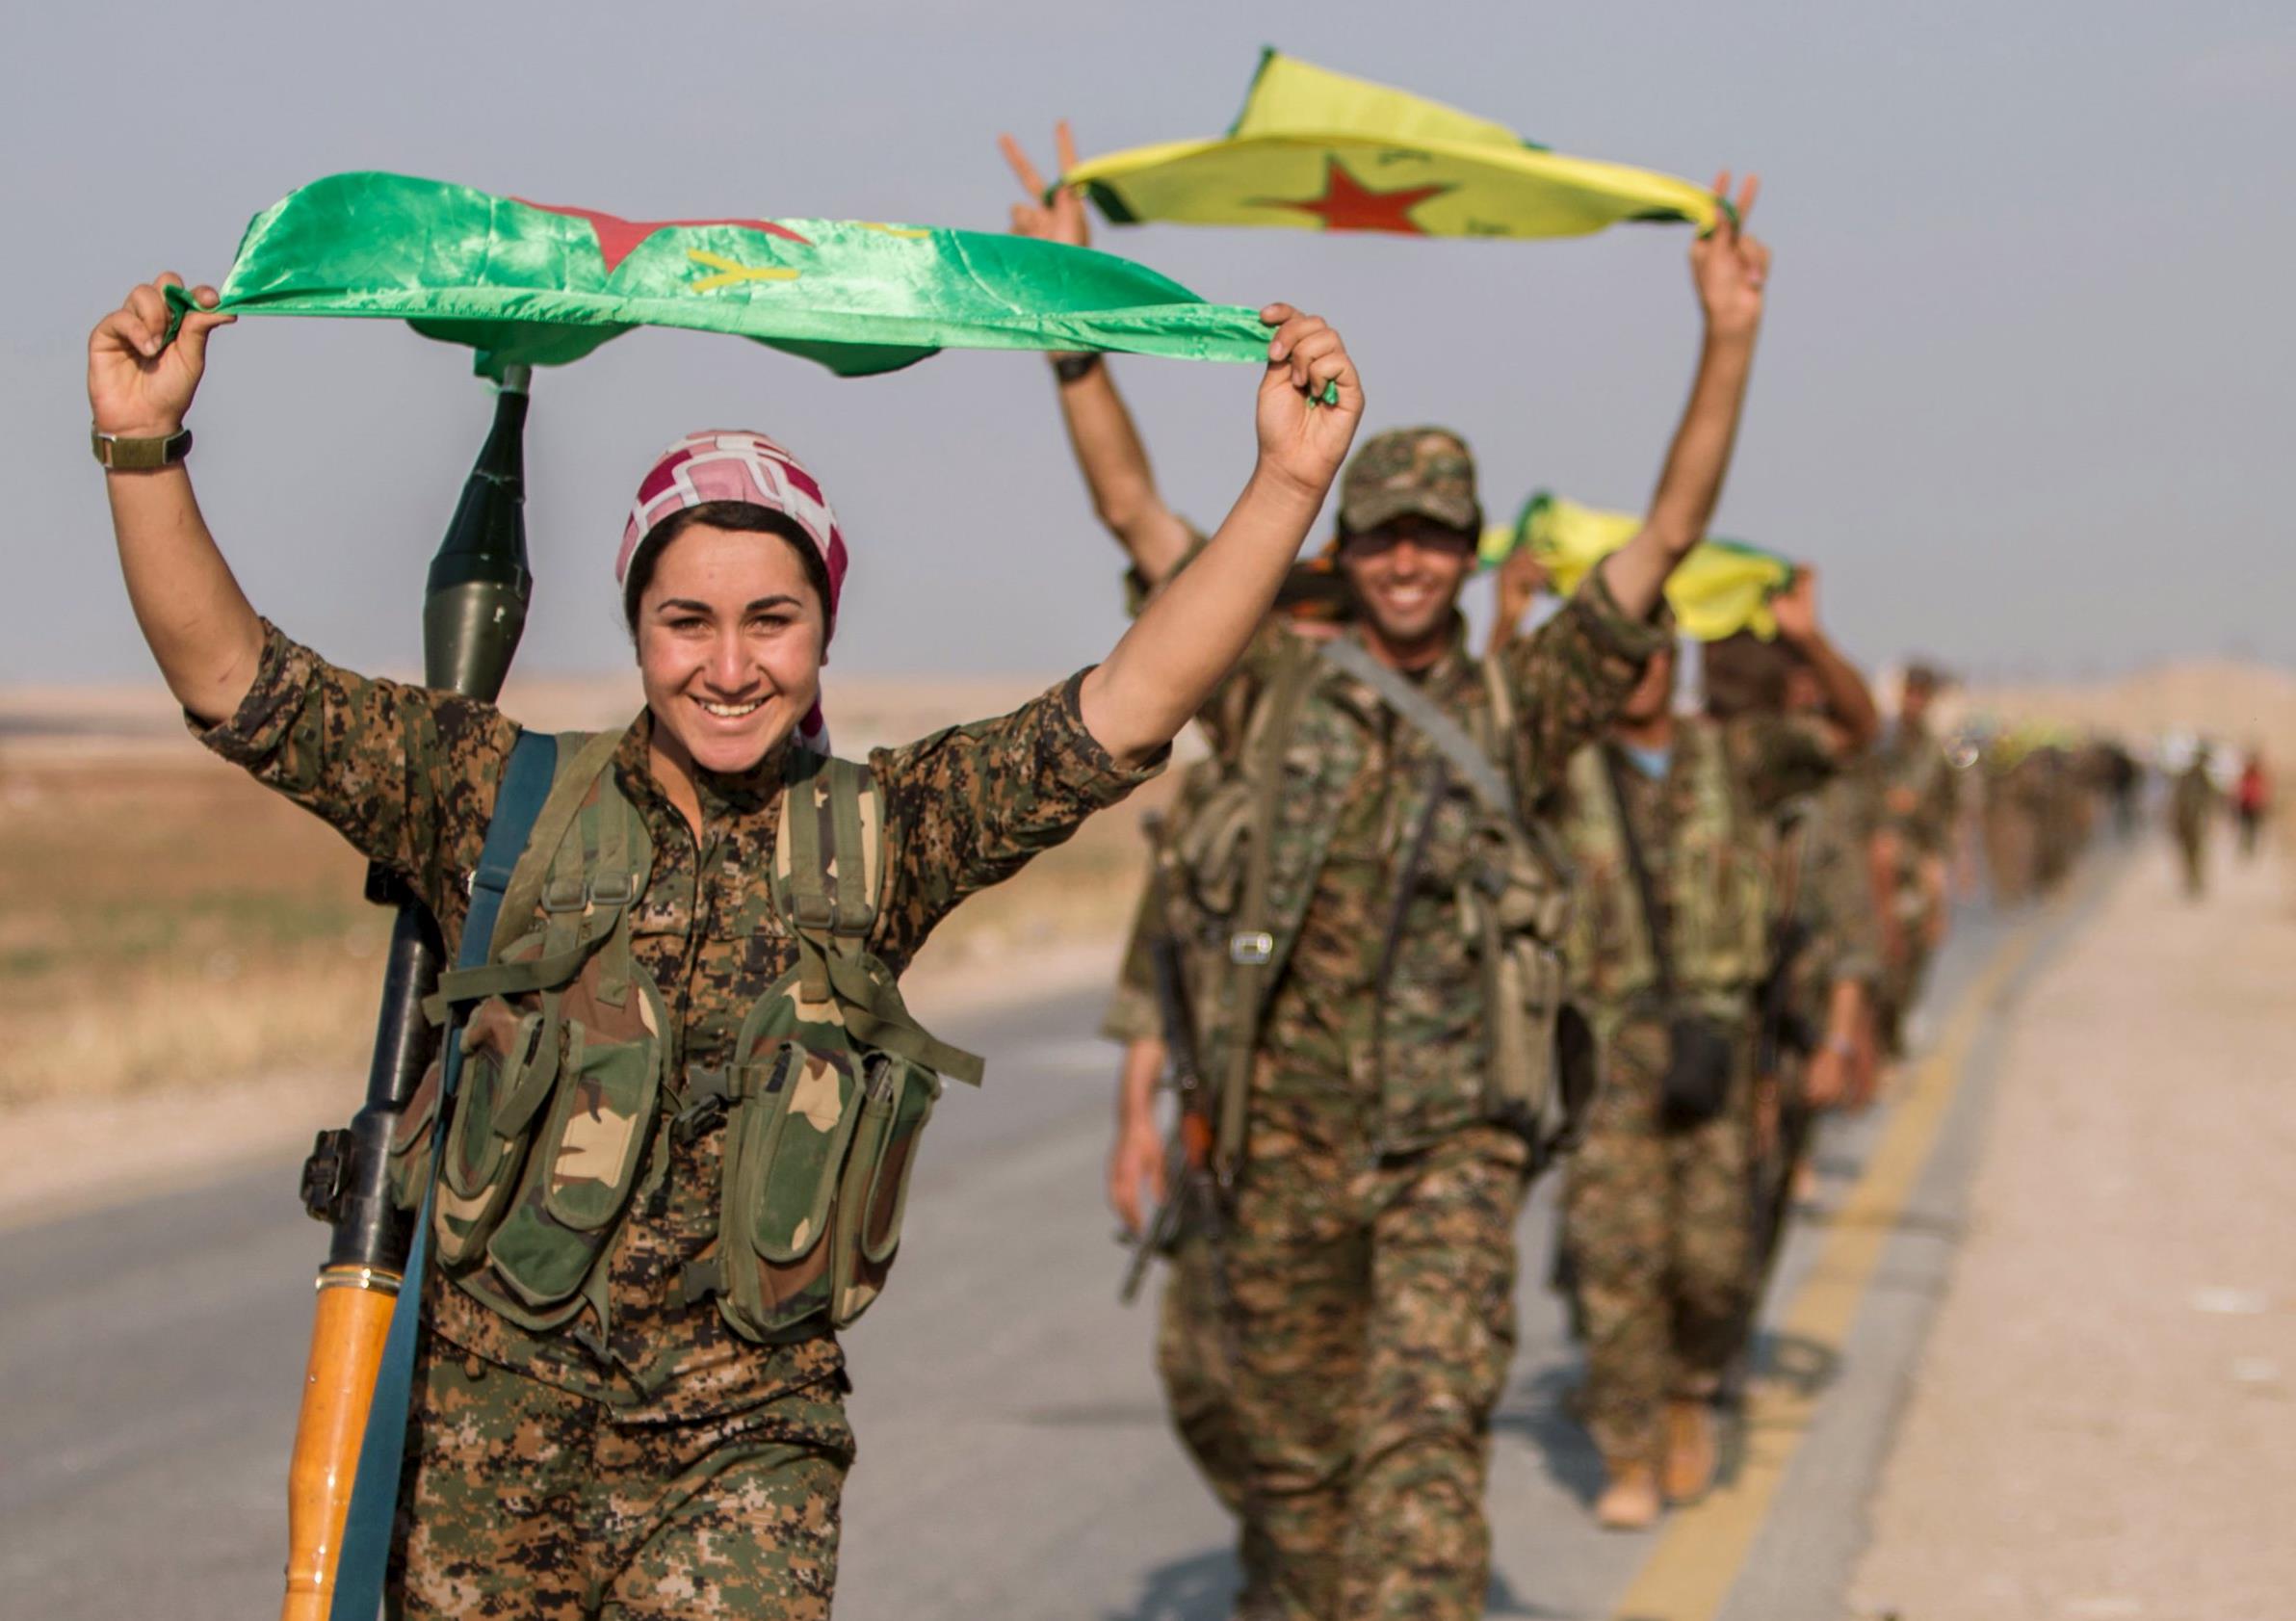 Σφόδρα ενοχλημένη η Άγκυρα από την στάση των ΗΠΑ έναντι των Κούρδων της Συρίας